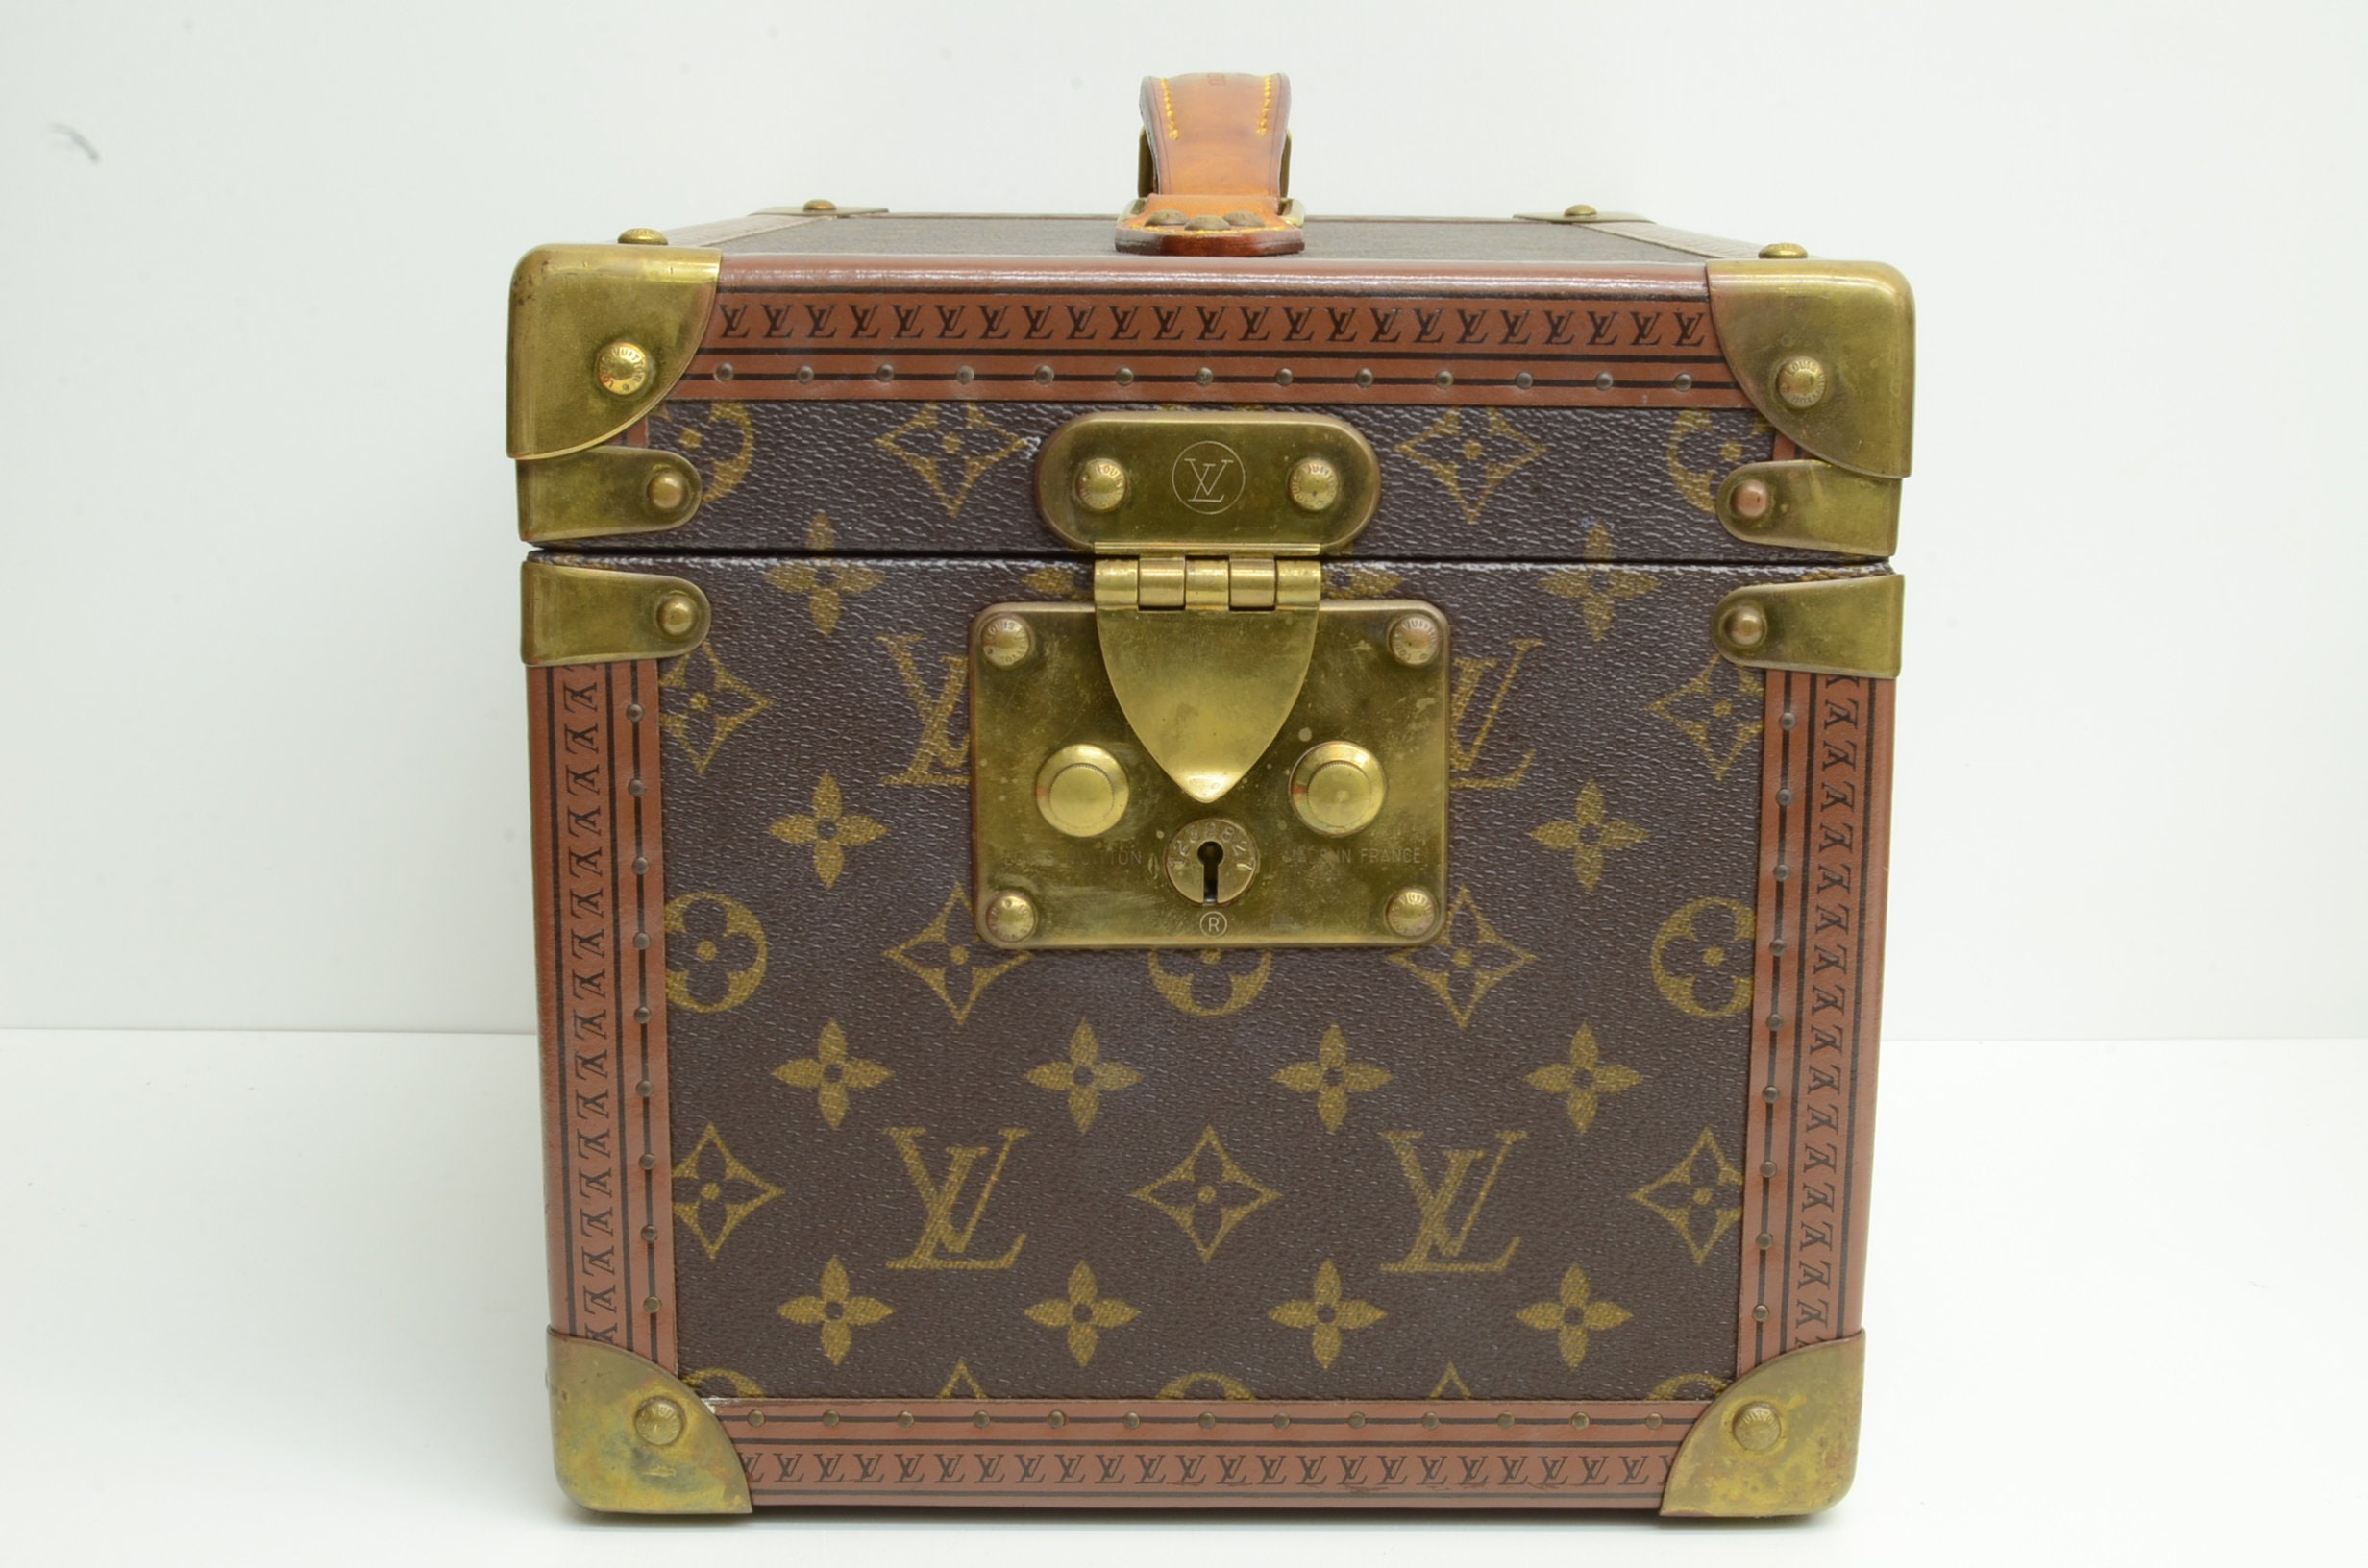 Sold at Auction: Louis Vuitton, Louis Vuitton, a Boite Flacons vanity ca